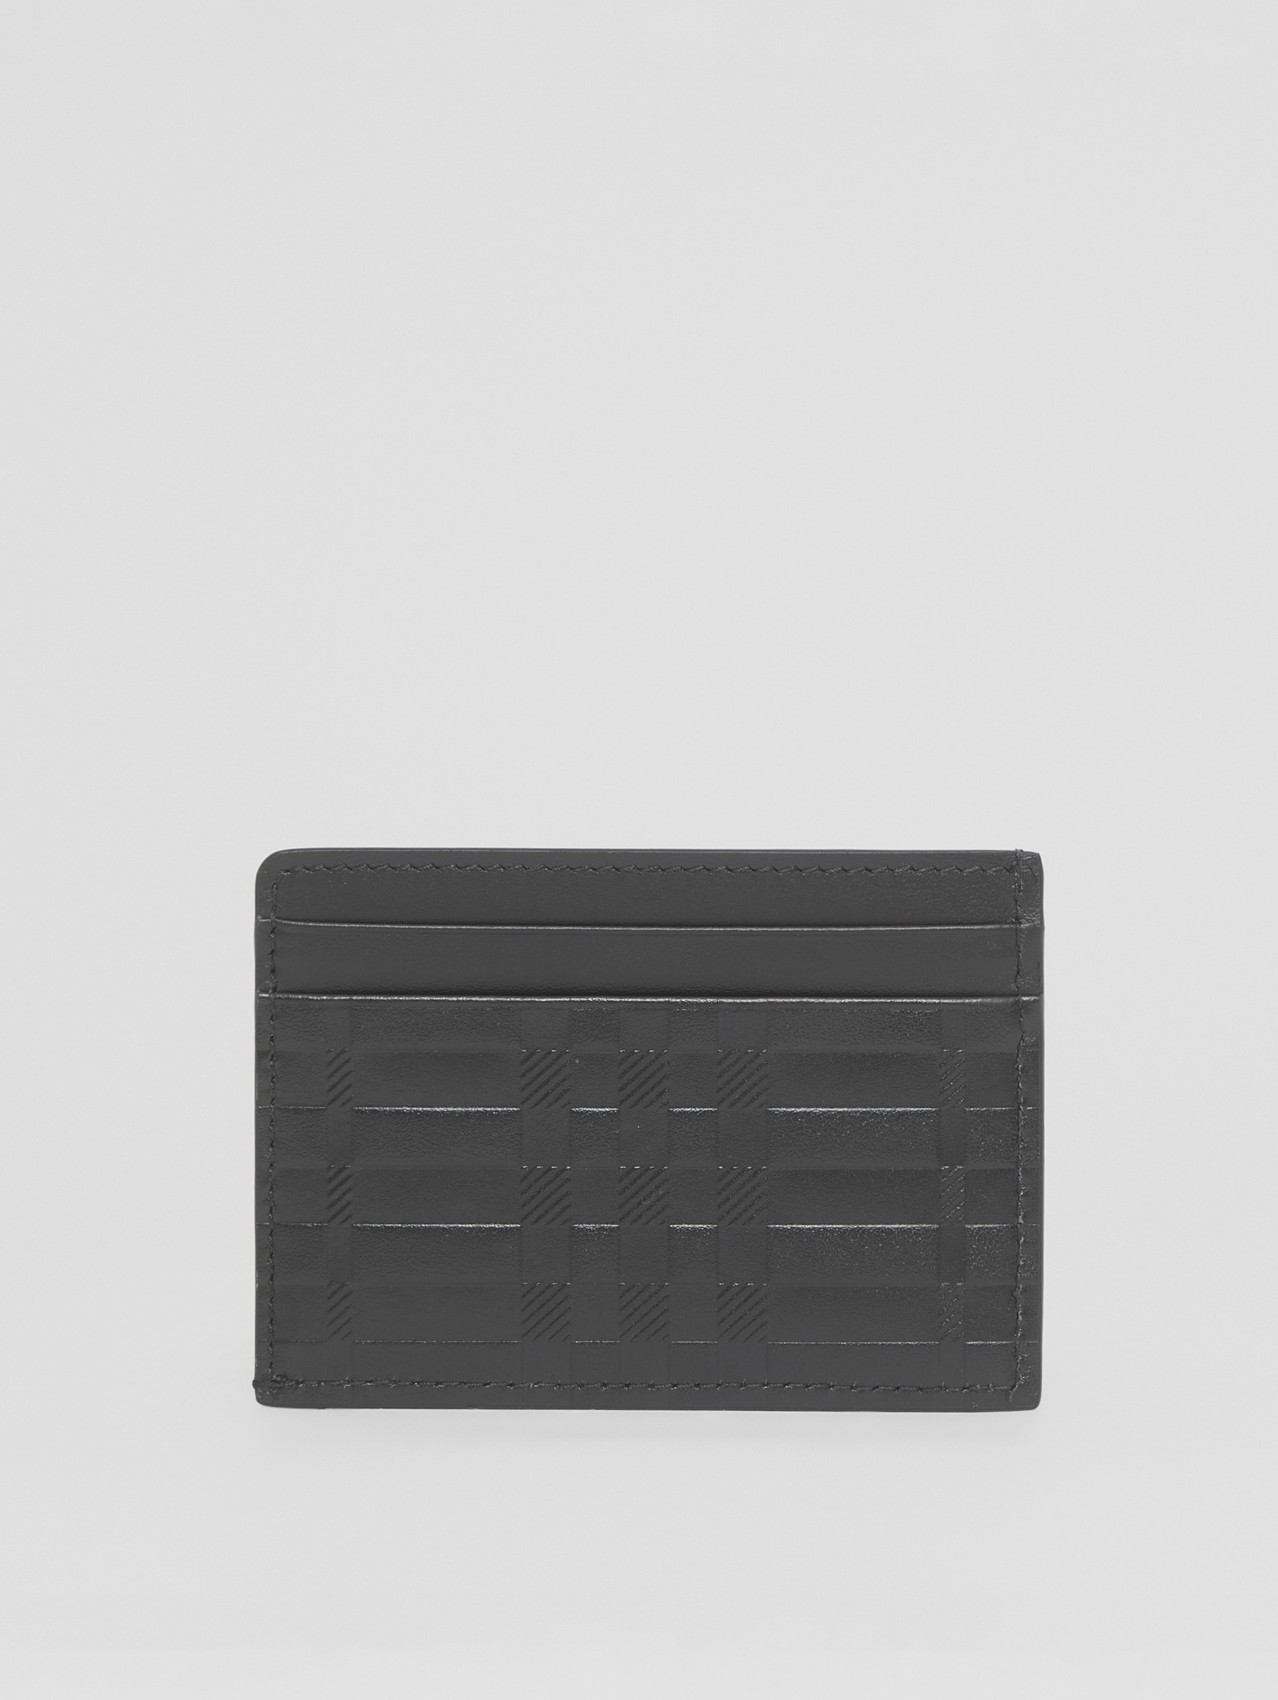 Porte-cartes en cuir check embossé (Noir)